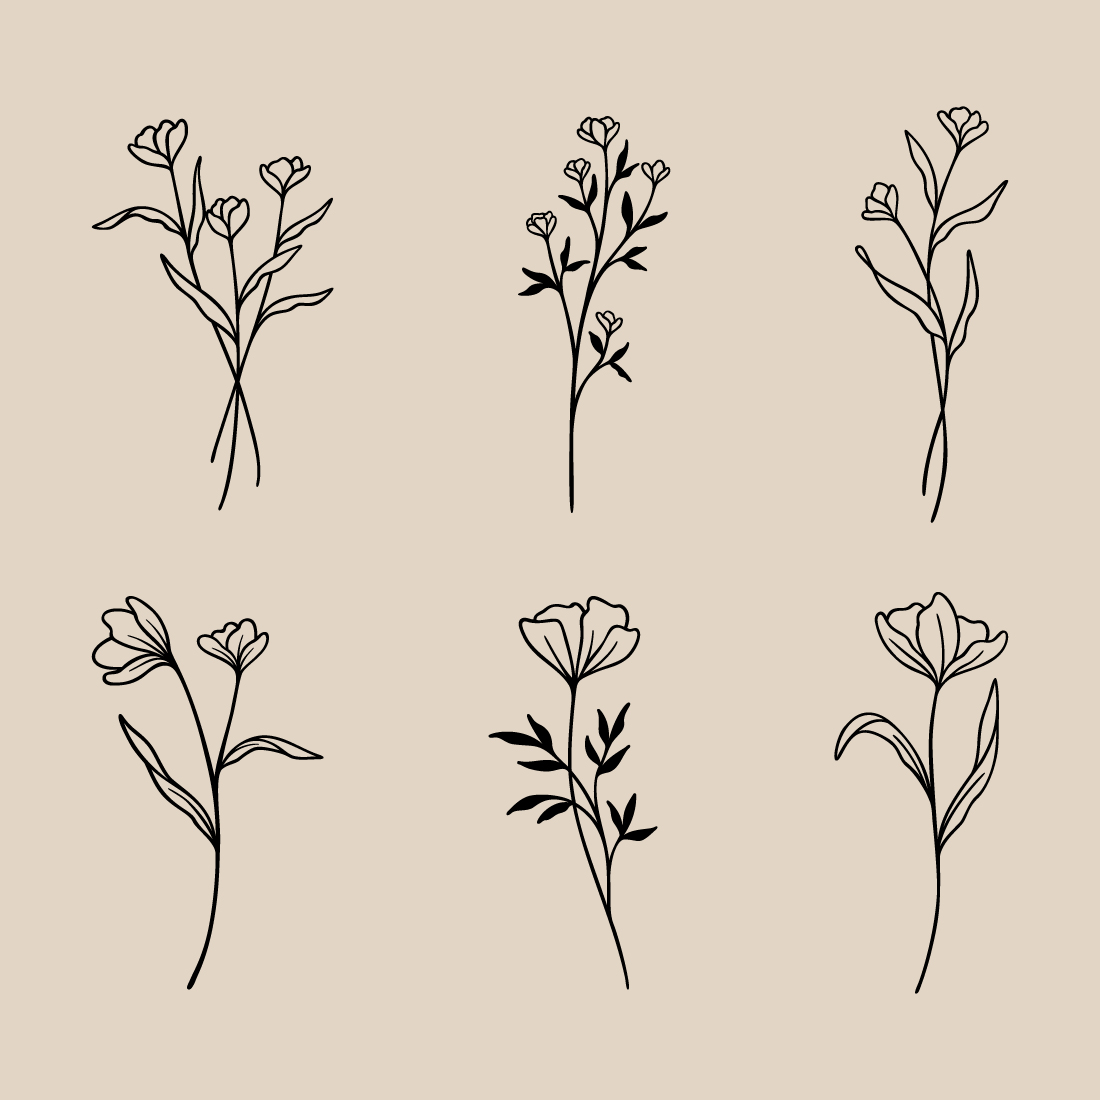 Flower Line Art Bundle | 6 Elegant Wildflowers | Botanical Floral Vector Illustration Set | Leafy Garden Plant Designs preview image.